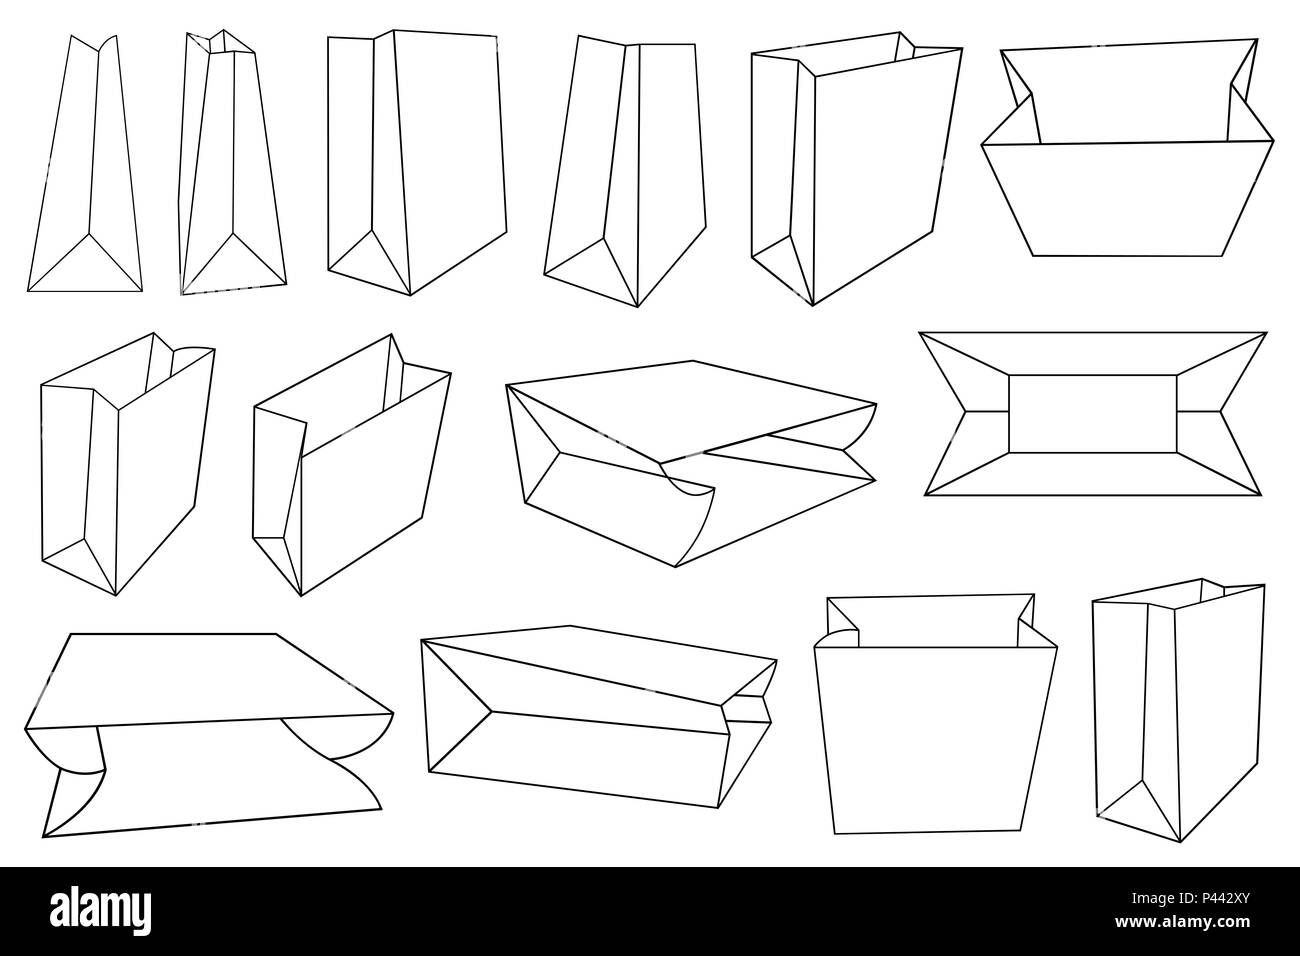 Illustration des différents types de sacs en papier isolated on white Banque D'Images